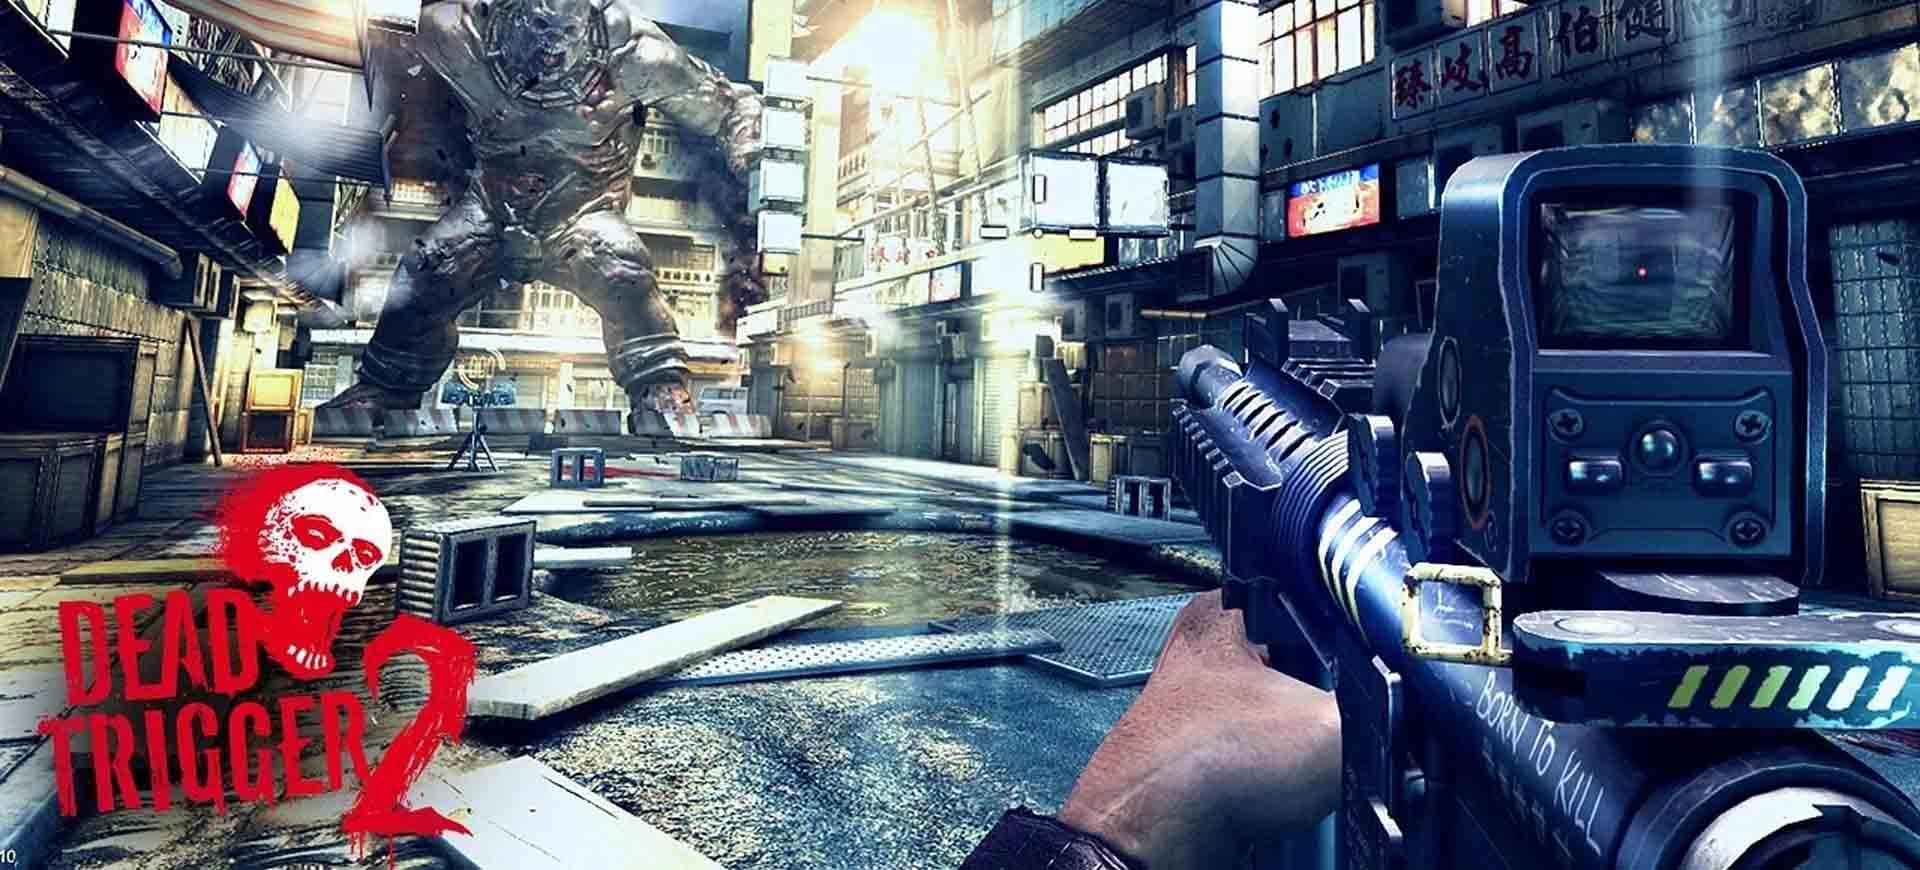 Dead Trigger 2 tung ra bản cập nhật mới – Tin Game Mobile